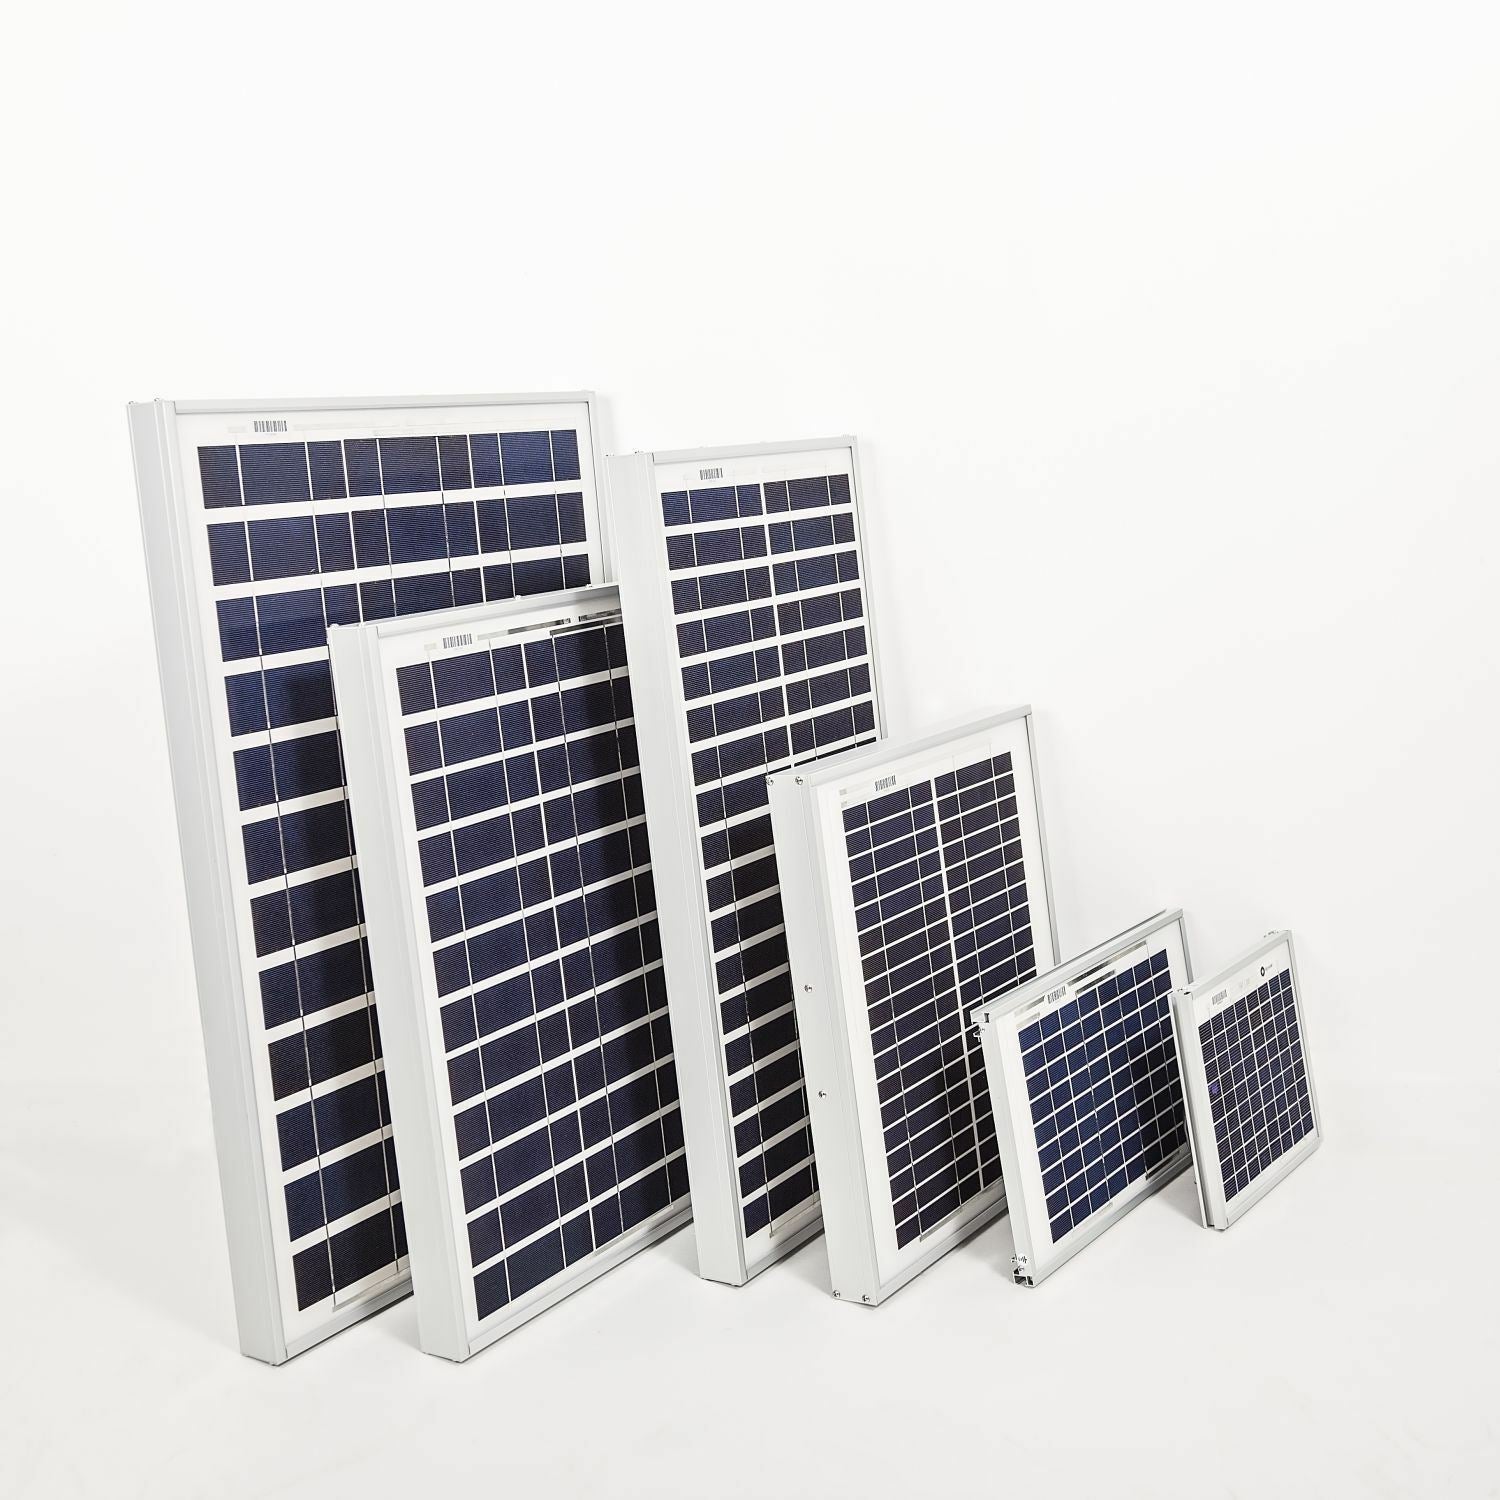 05M, Ameresco (BP Solar) Photovoltaic 5 Watt Solar Panel - Polycrystalline cells (5MBPSOLAR)